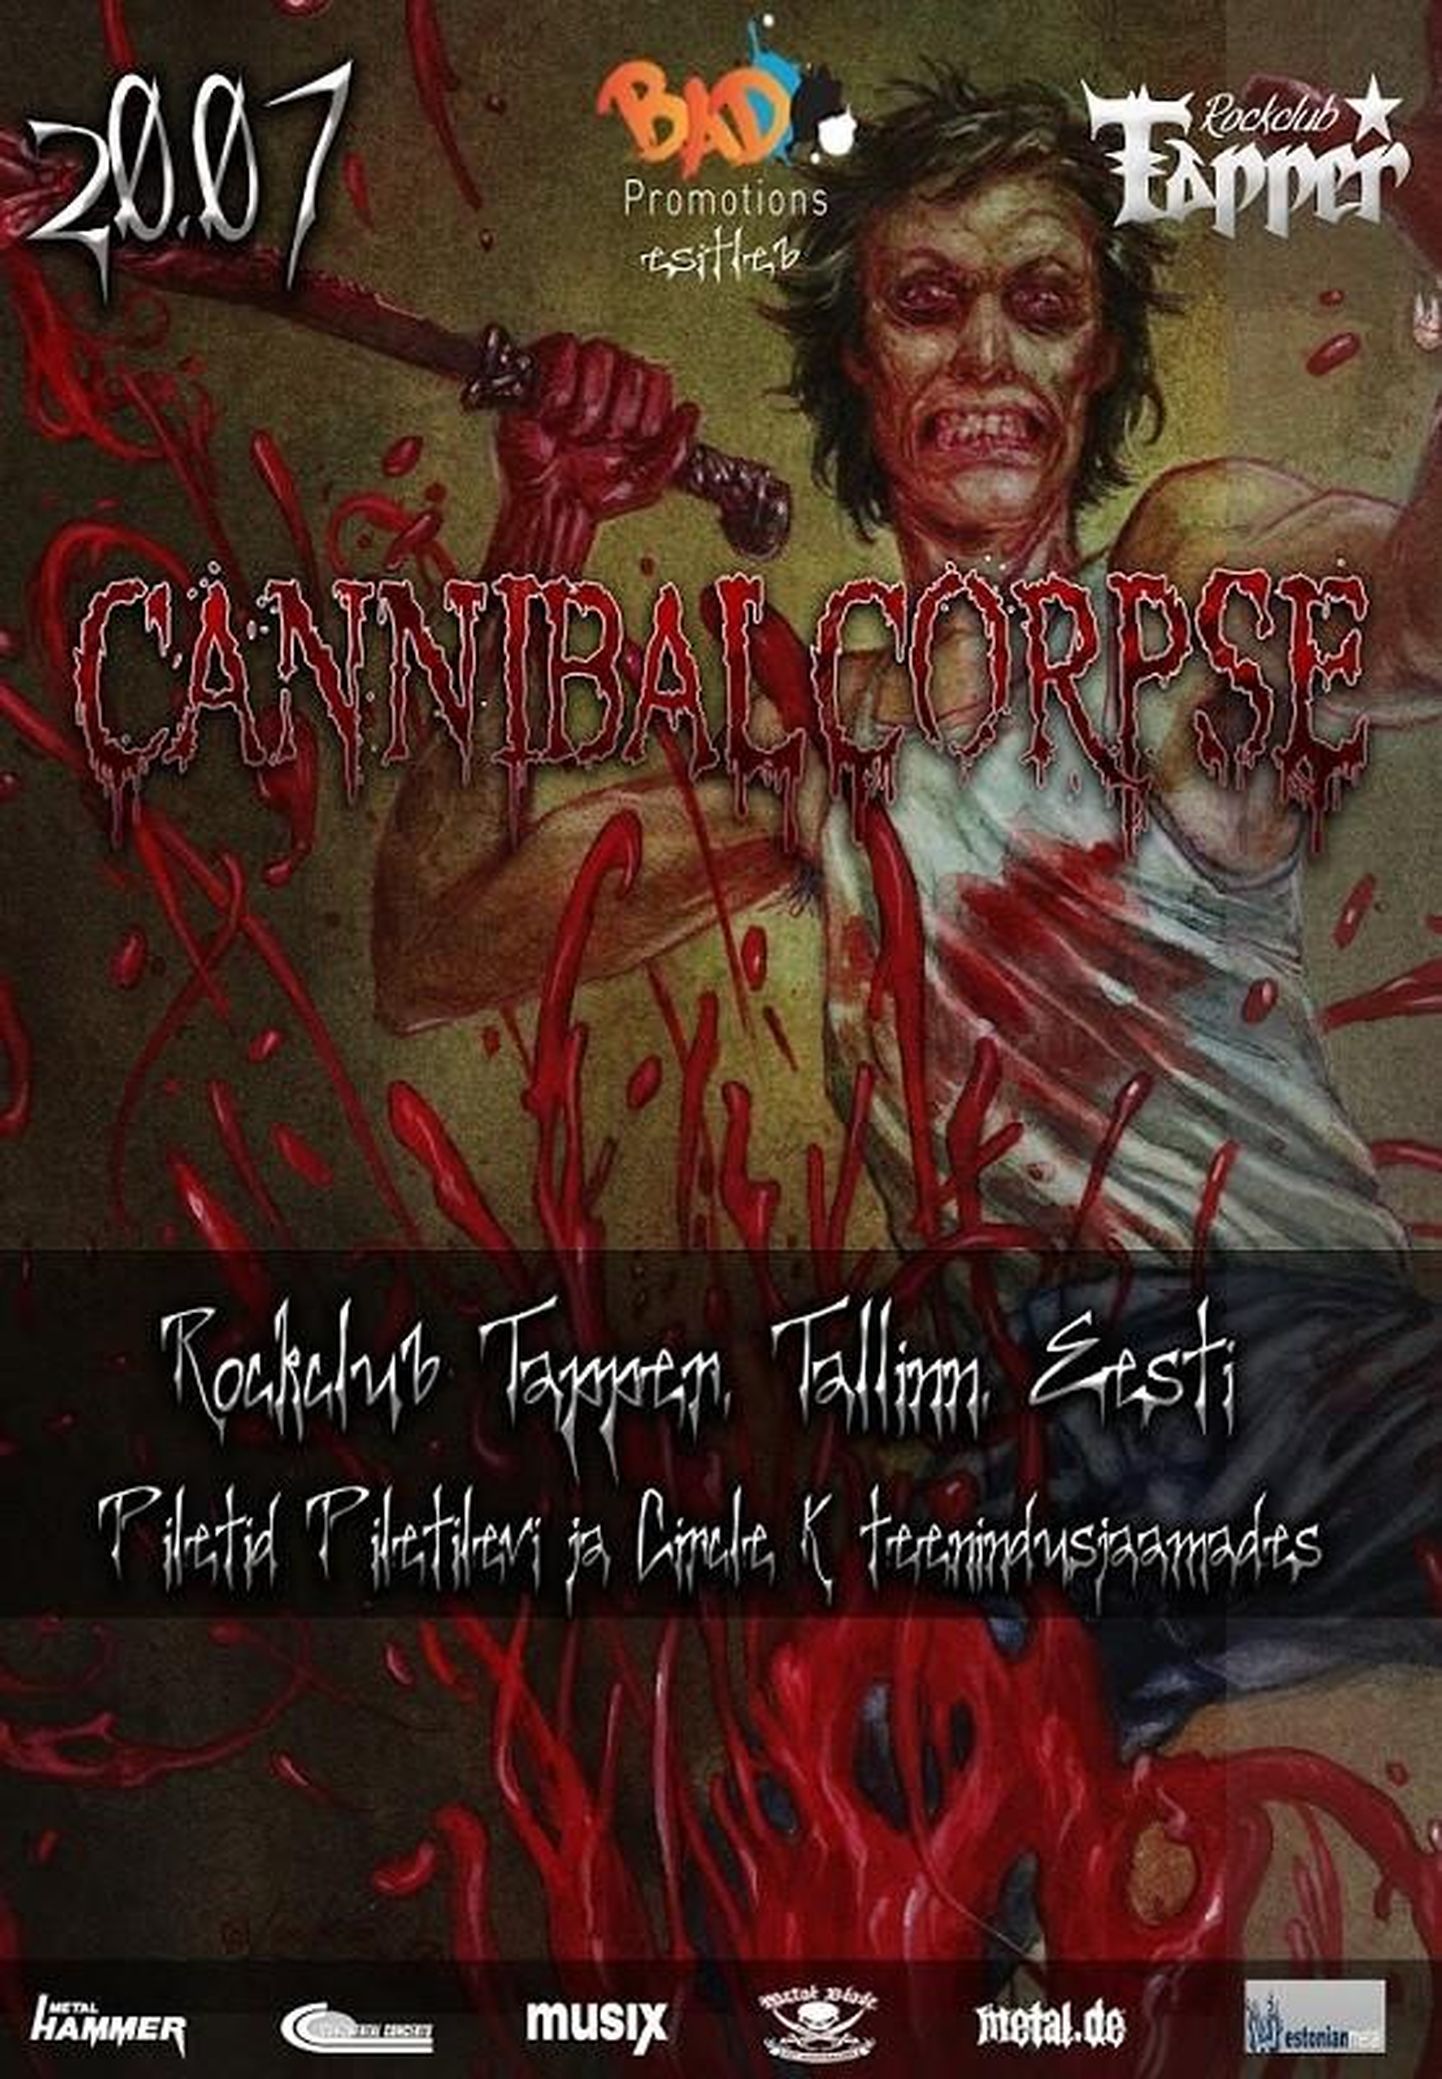 Cannibal Coprse´i Tallinna kontserdi plakat.